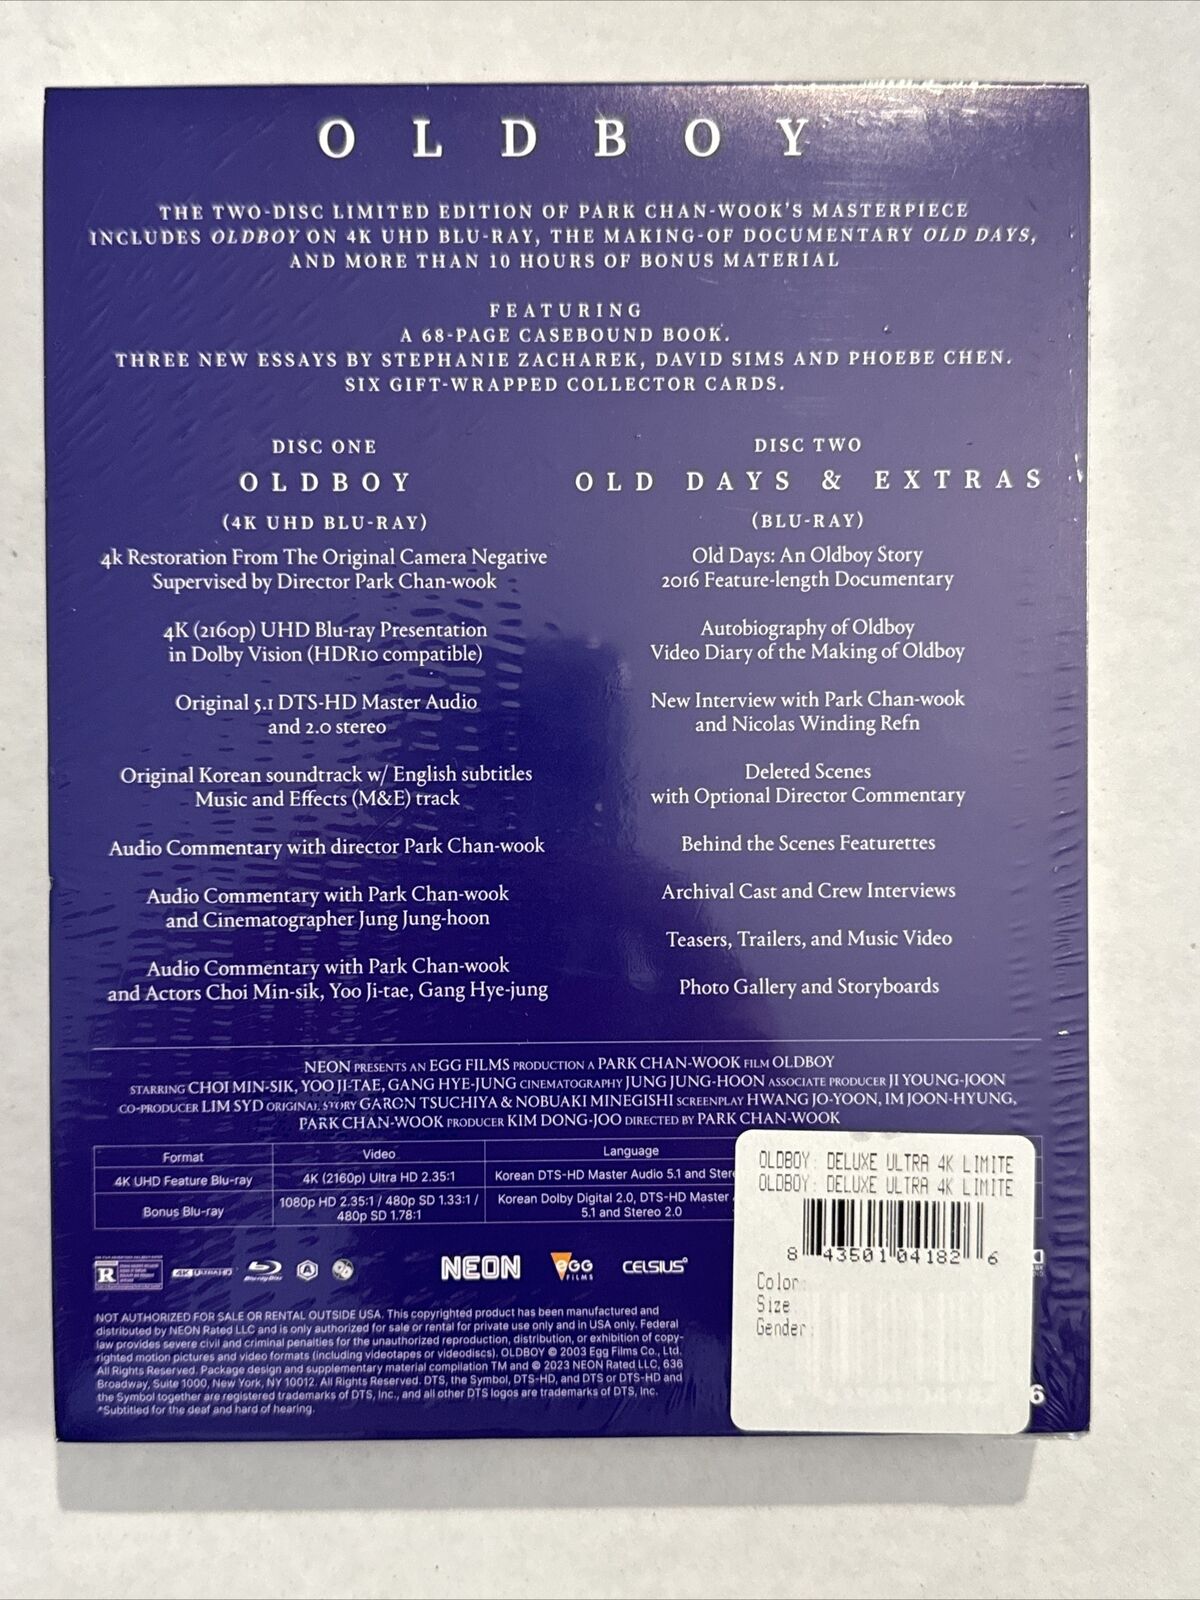 Oldboy - 4K Ultra HD Blu-Ray Limited Edition Rare